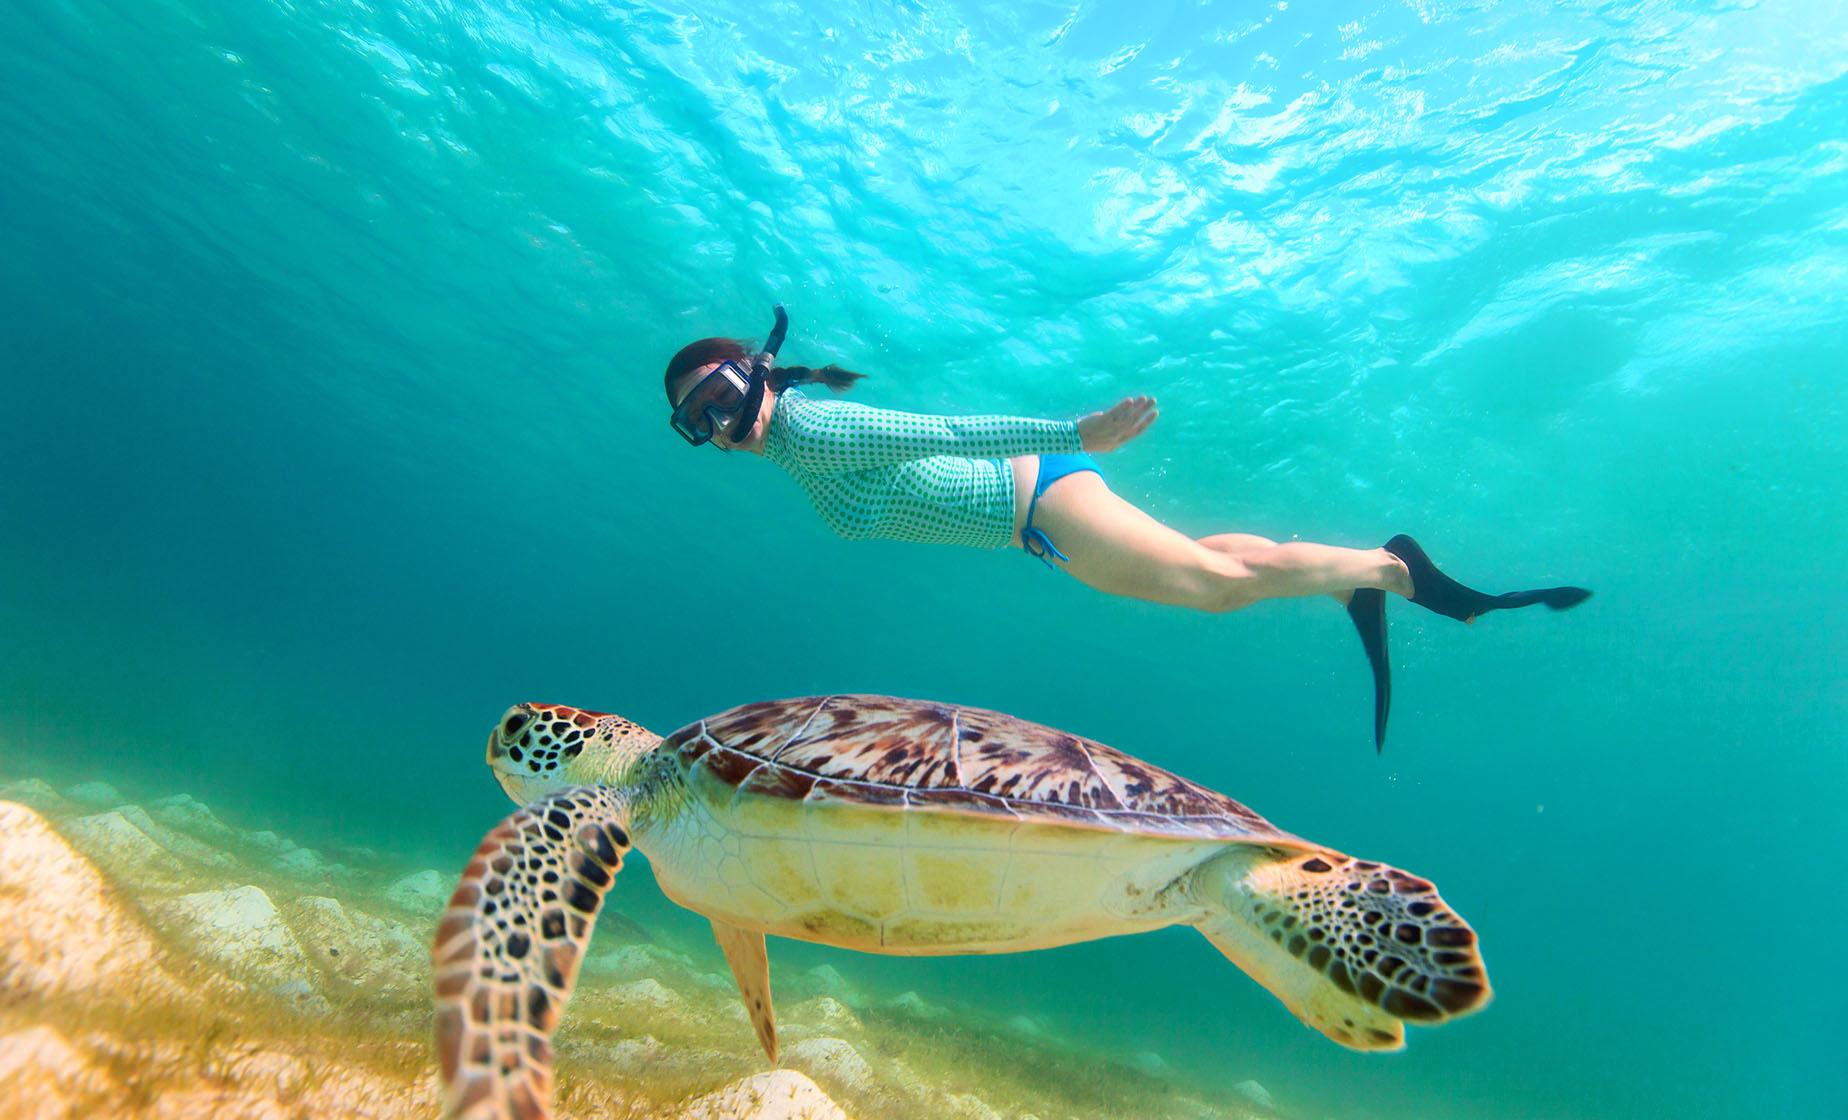 Snorkeling in St. Kitts (Reefs, Fish, Turtles)